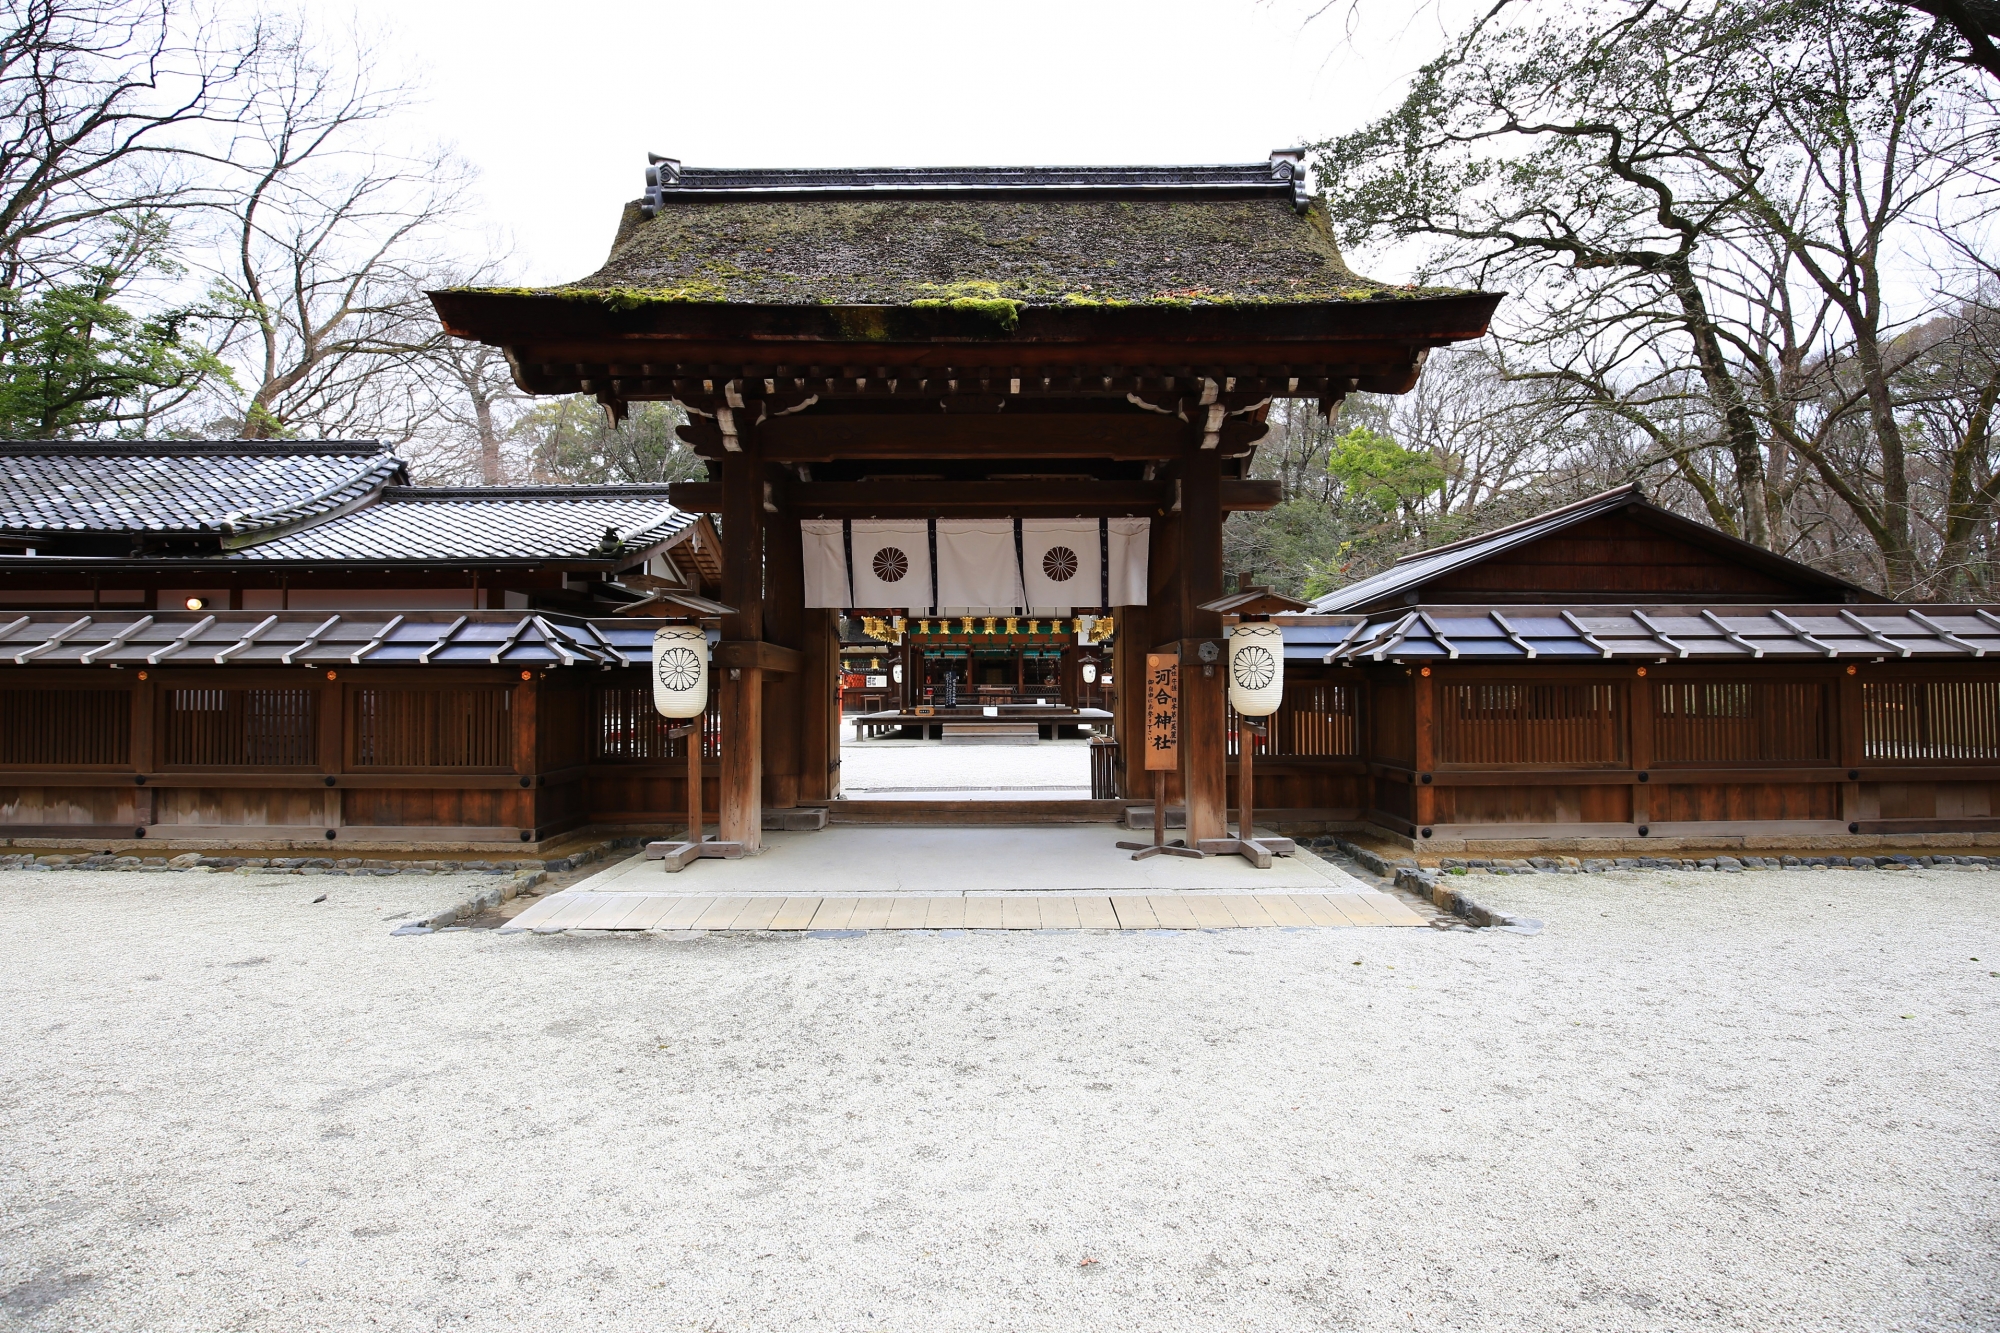 落ち着いた雰囲気の河合神社の山門